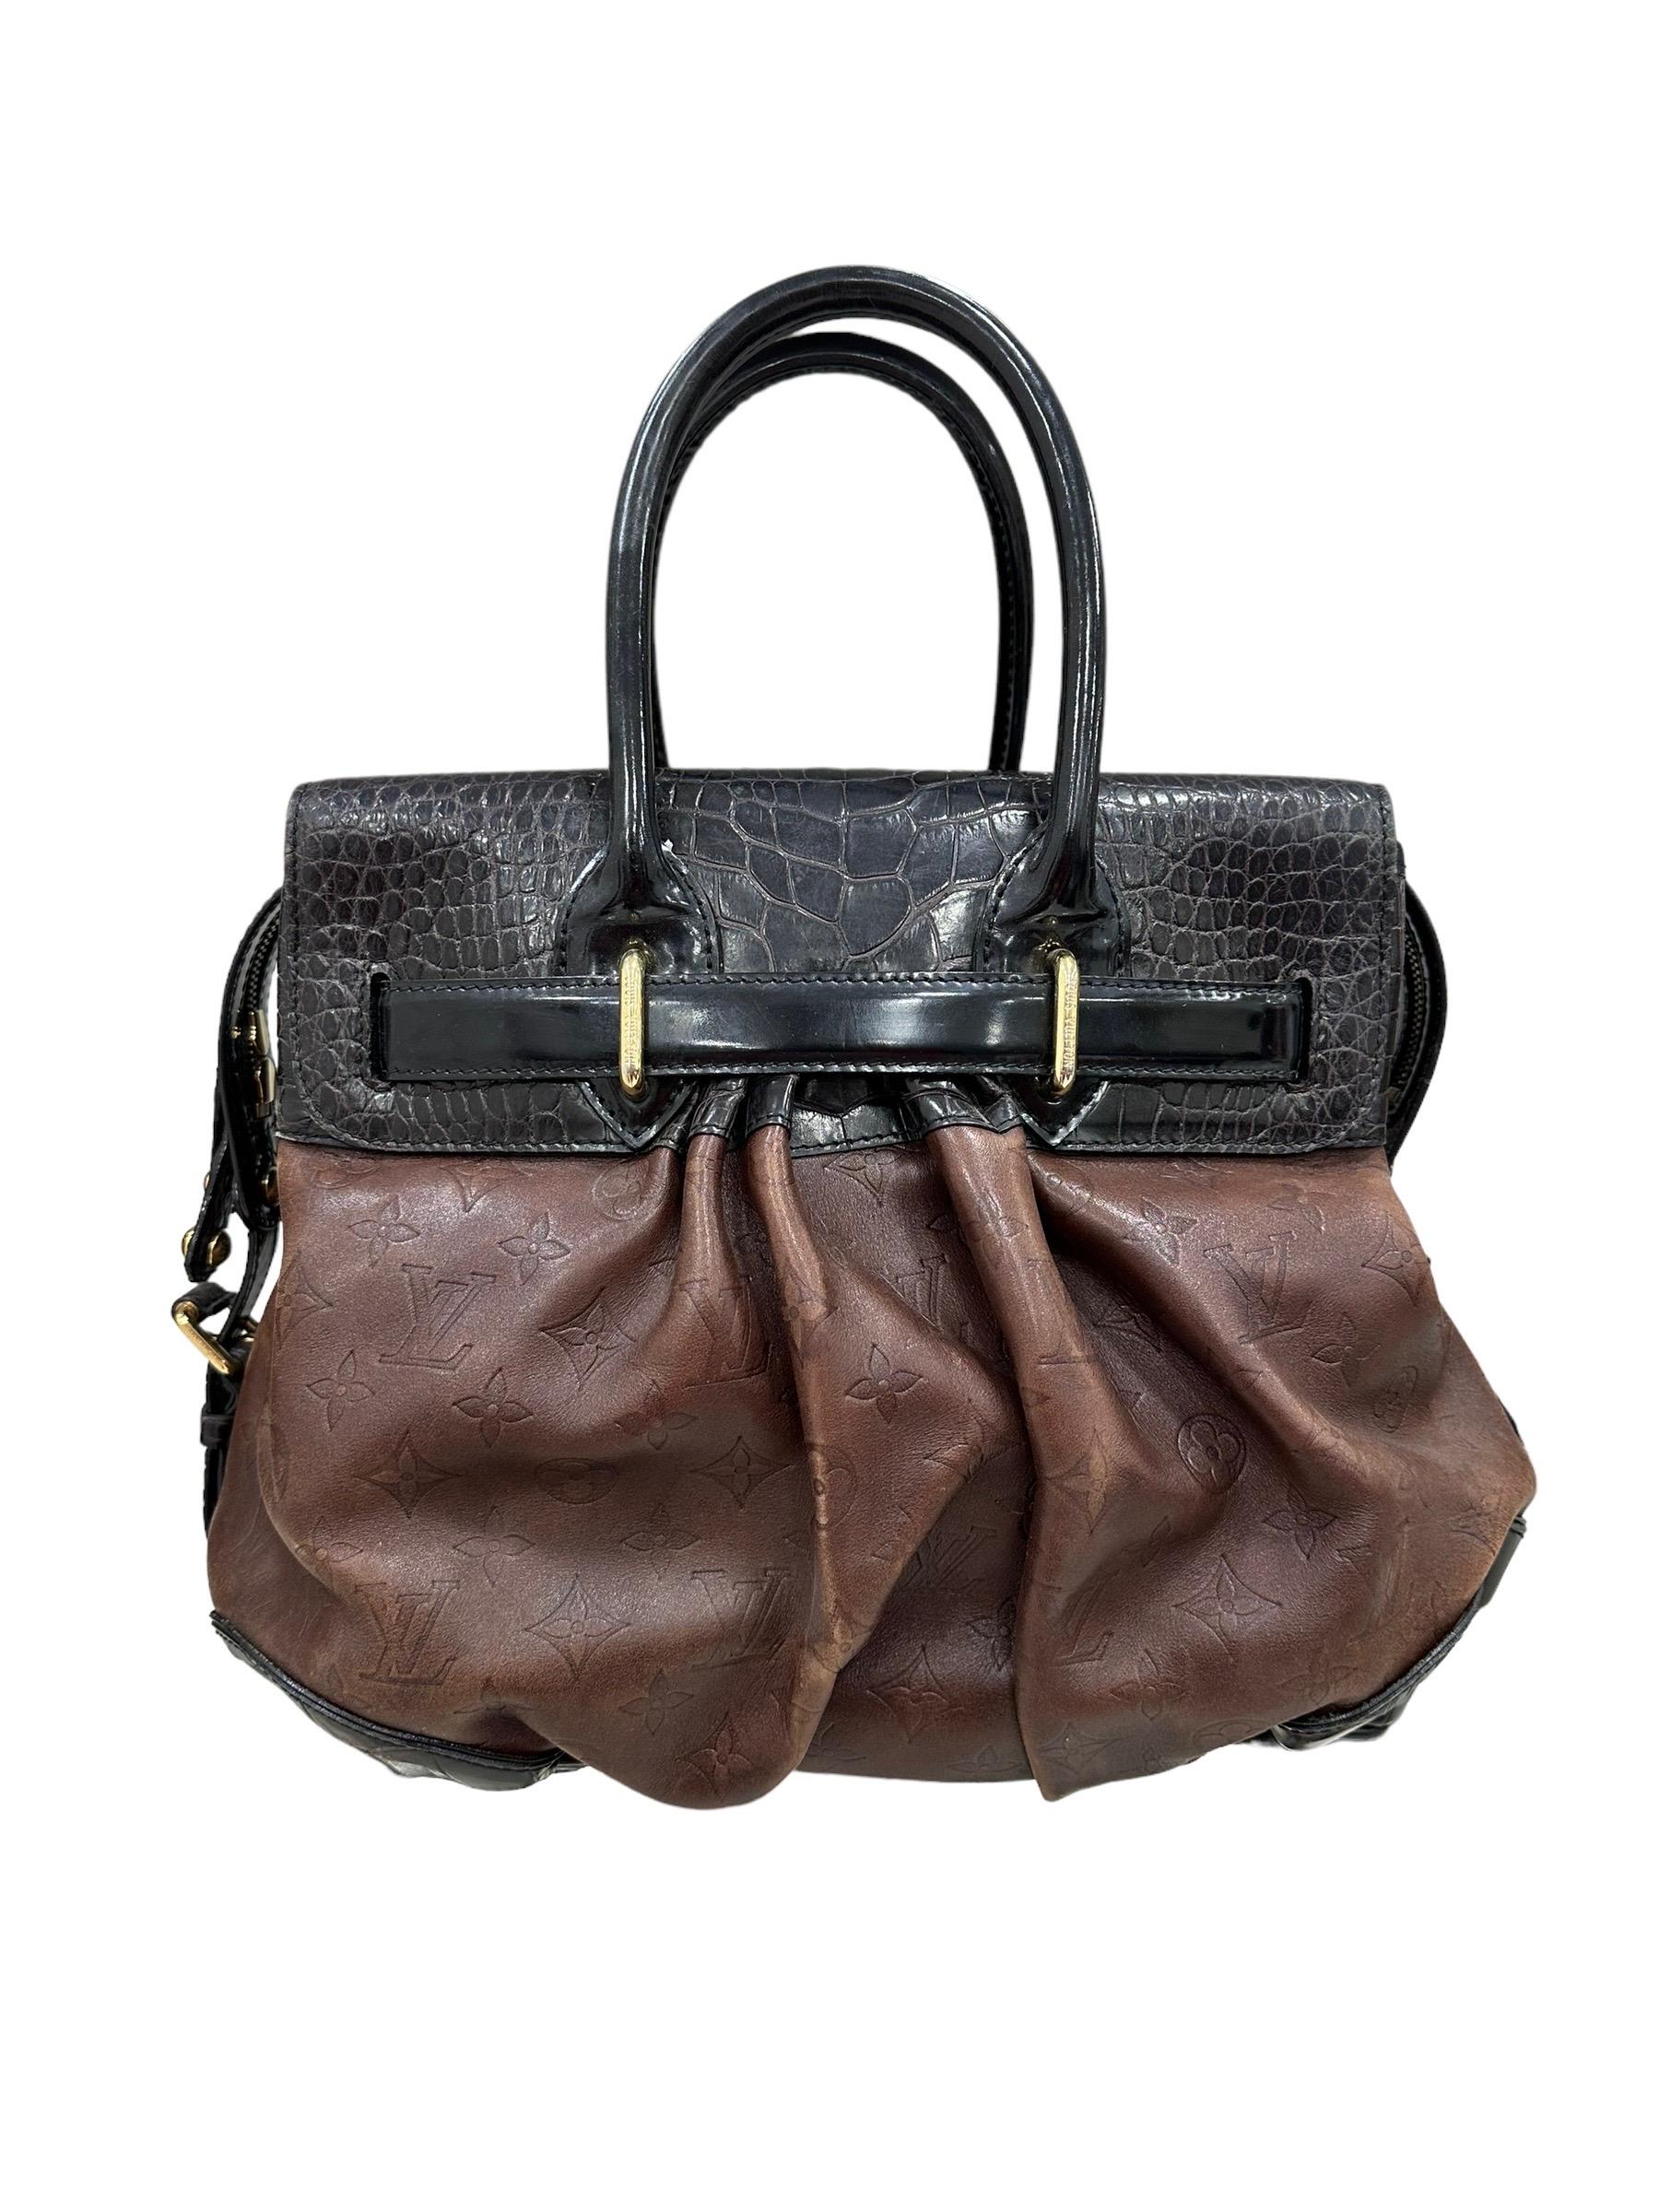 2006 Louis Vuitton Les Extraordinaires Top Handle Bag For Sale 4